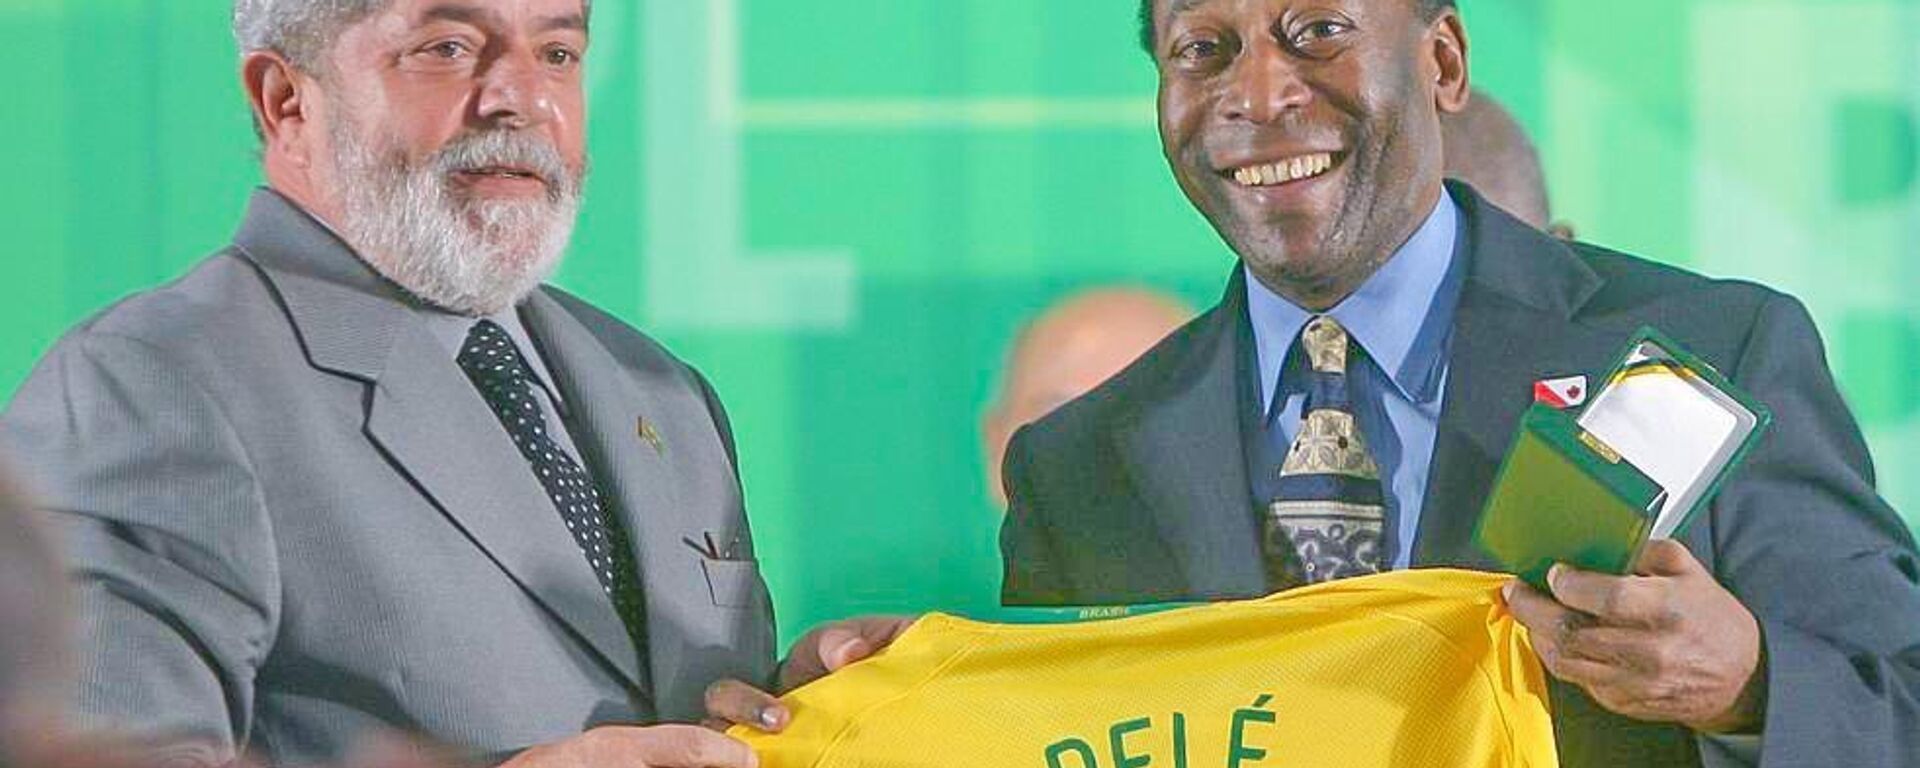 El presidente de Brasil, Lula de Silva, con Pelé, la leyenda del fútbol mundial - Sputnik Mundo, 1920, 29.12.2022